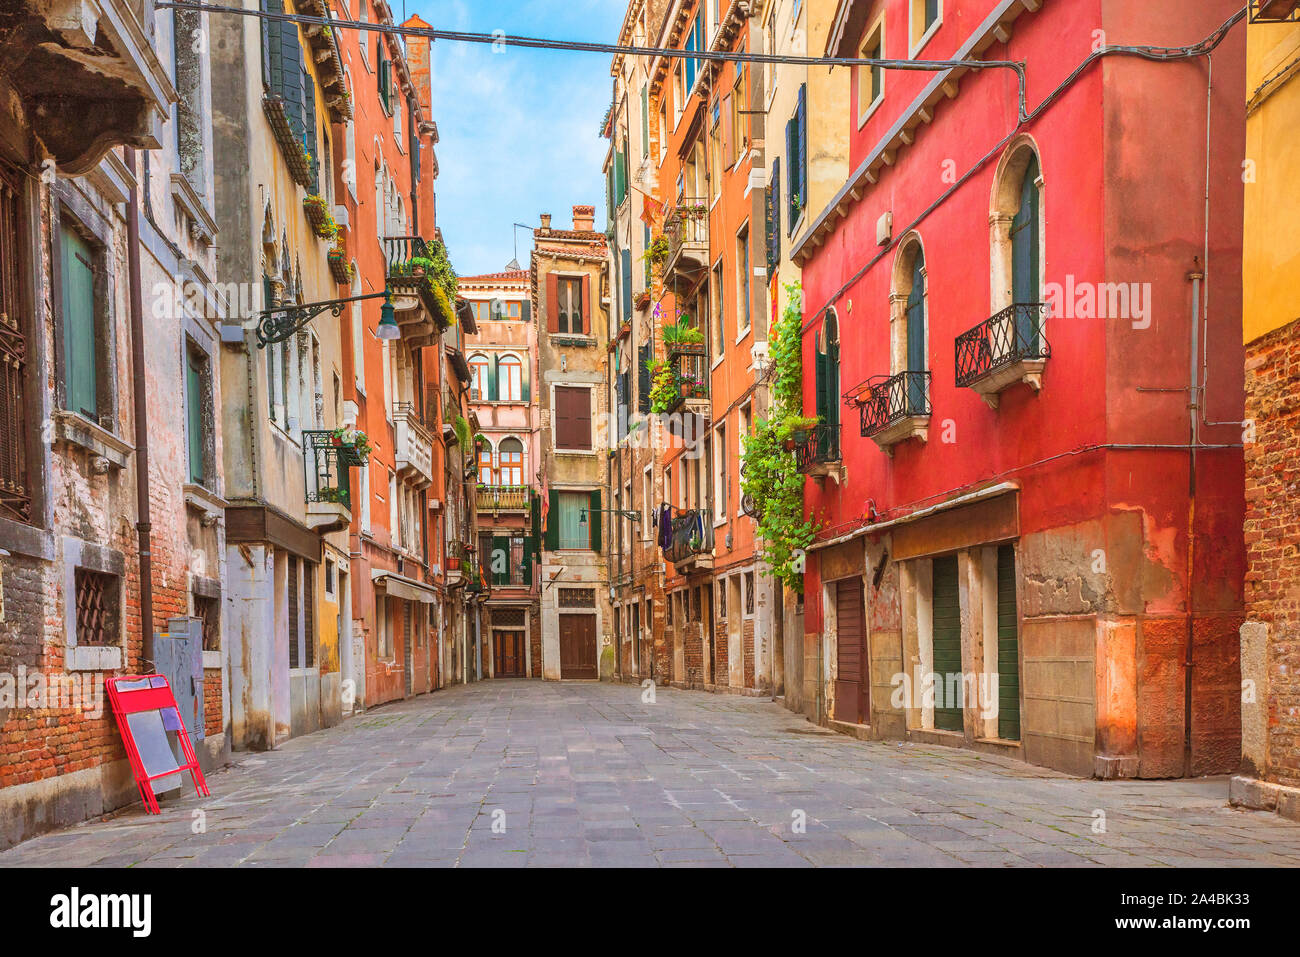 Case colorate nella vecchia strada medievale a Venezia, Veneto, Italia Foto Stock